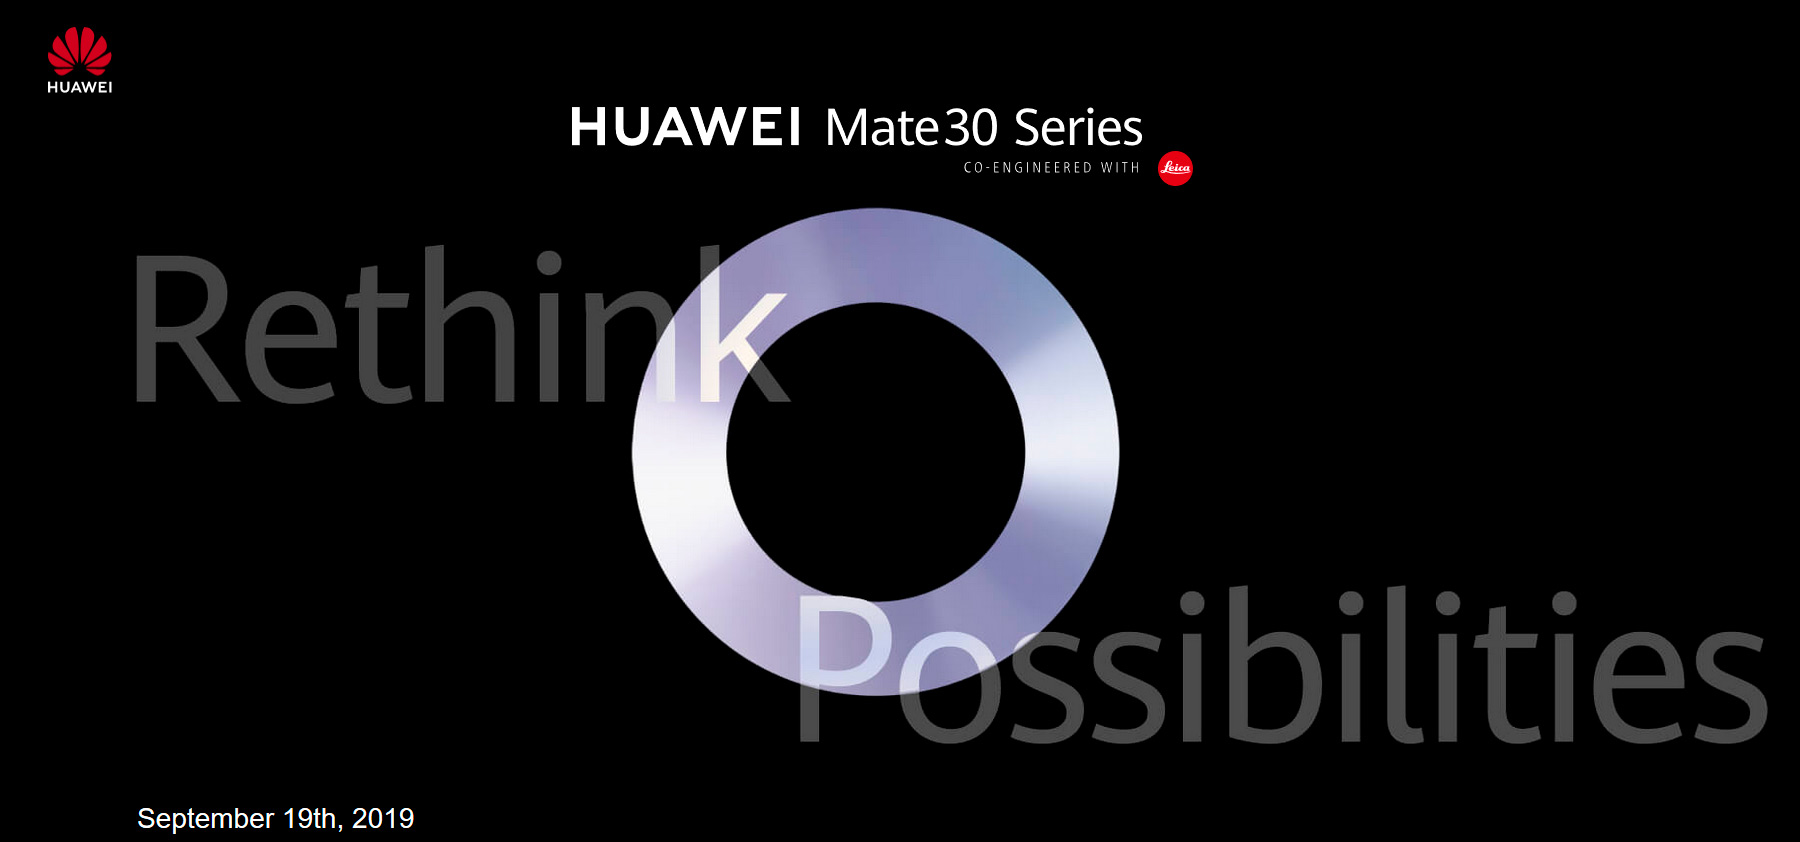 Ini resmi: Huawei Mate 30 sudah memiliki tanggal presentasi